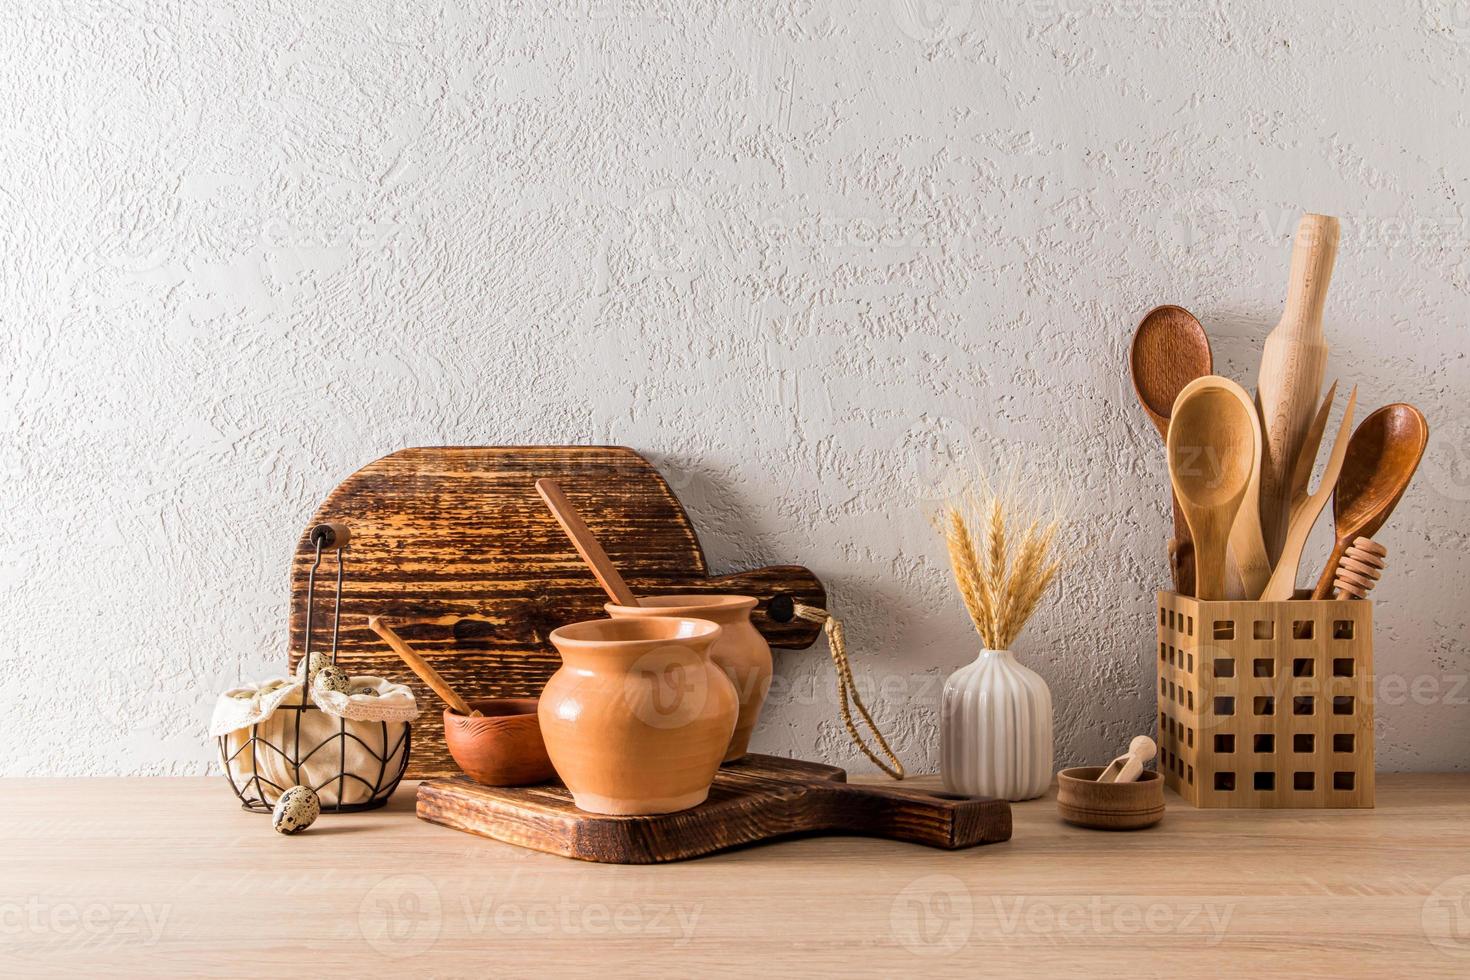 fond de cuisine de cuisine écologiquement propre d'une maison de campagne, chalet. ustensiles en matériaux naturels sur un comptoir en bois. photo